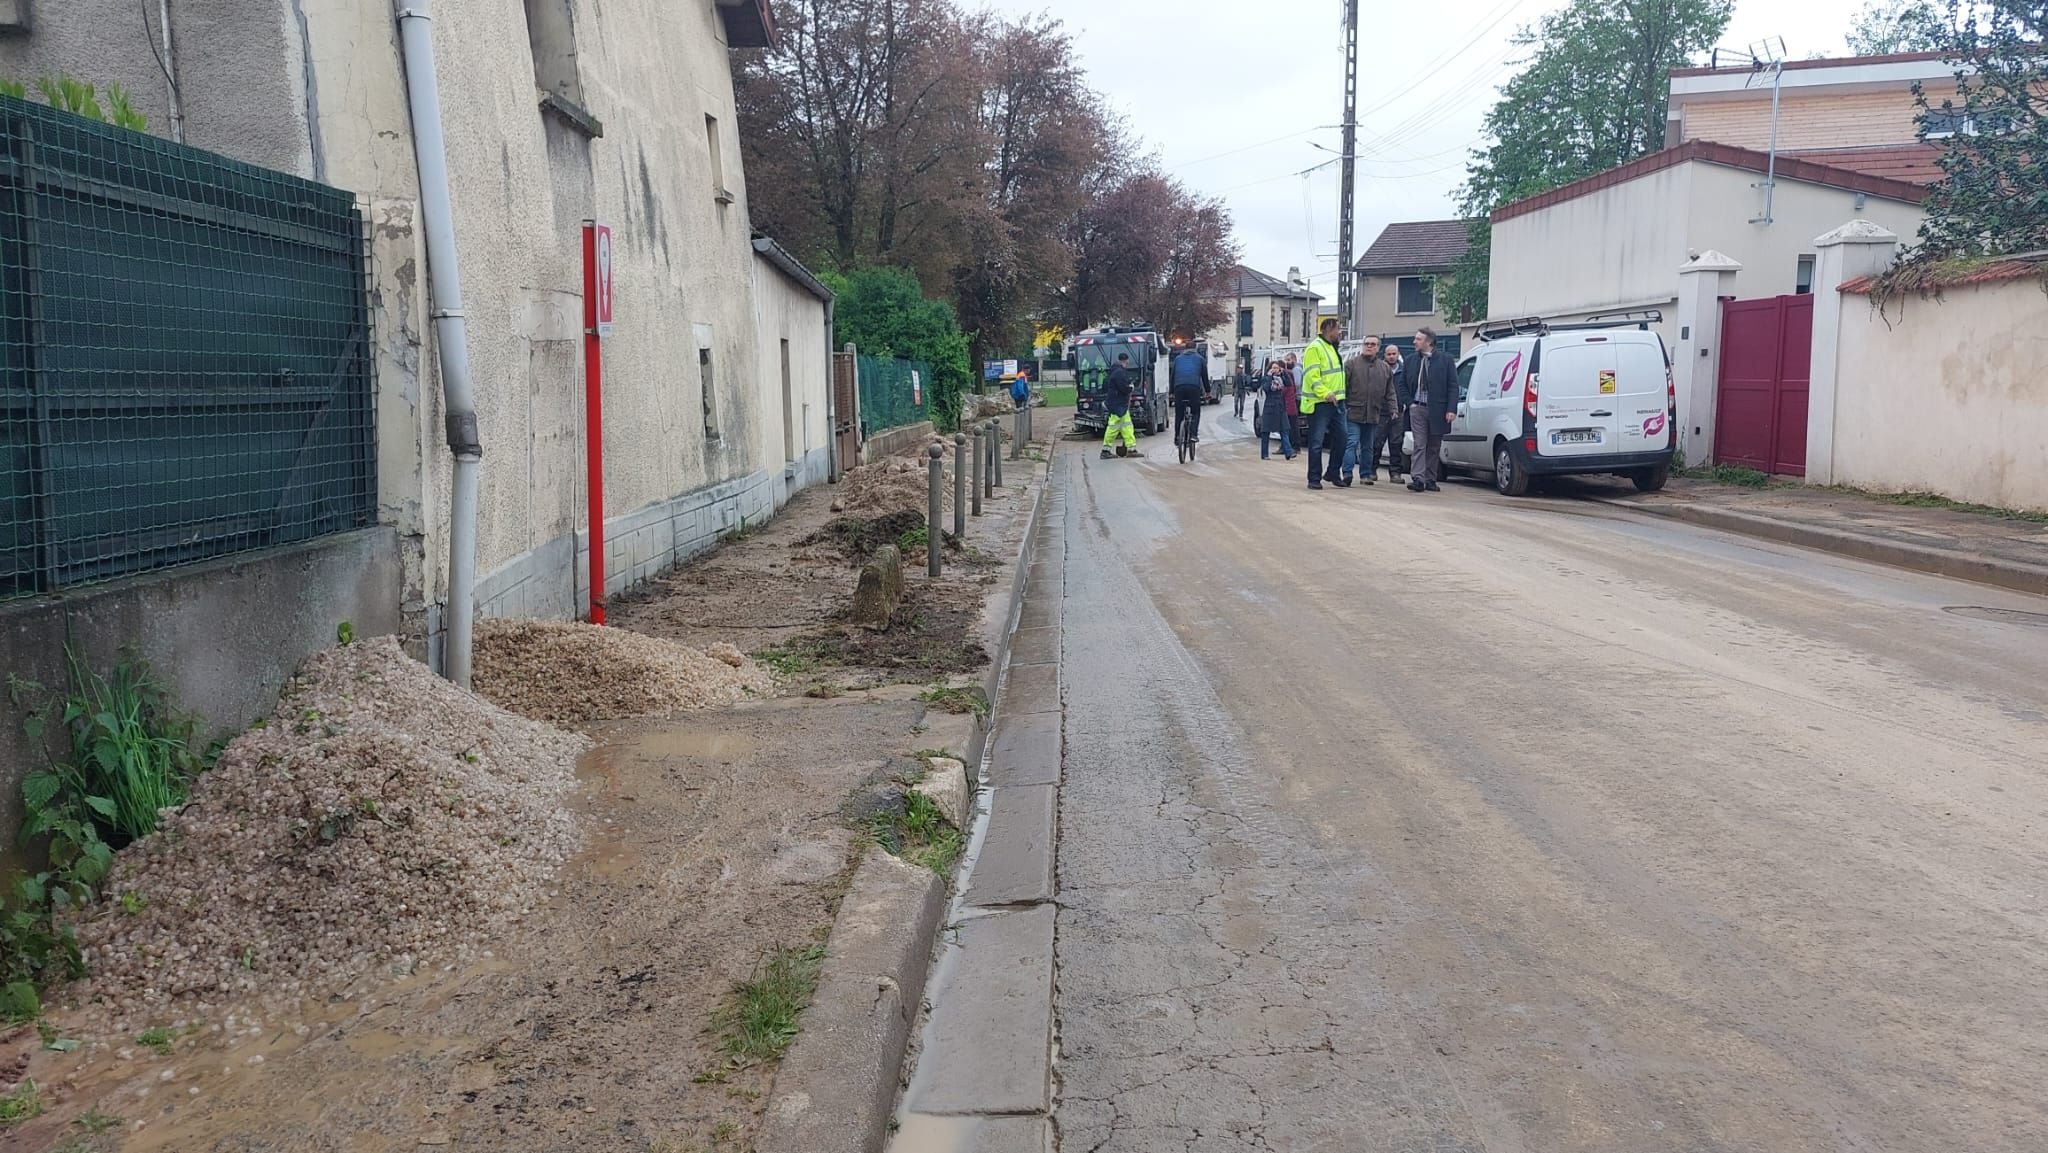 Tremblay-en-France (Seine-Saint-Denis), ce jeudi matin. Dans la nuit du 1er mai au 2 mai, la Route de Roissy a subi une coulée de boue, suite aux orages.
LP/Elsa Marnette